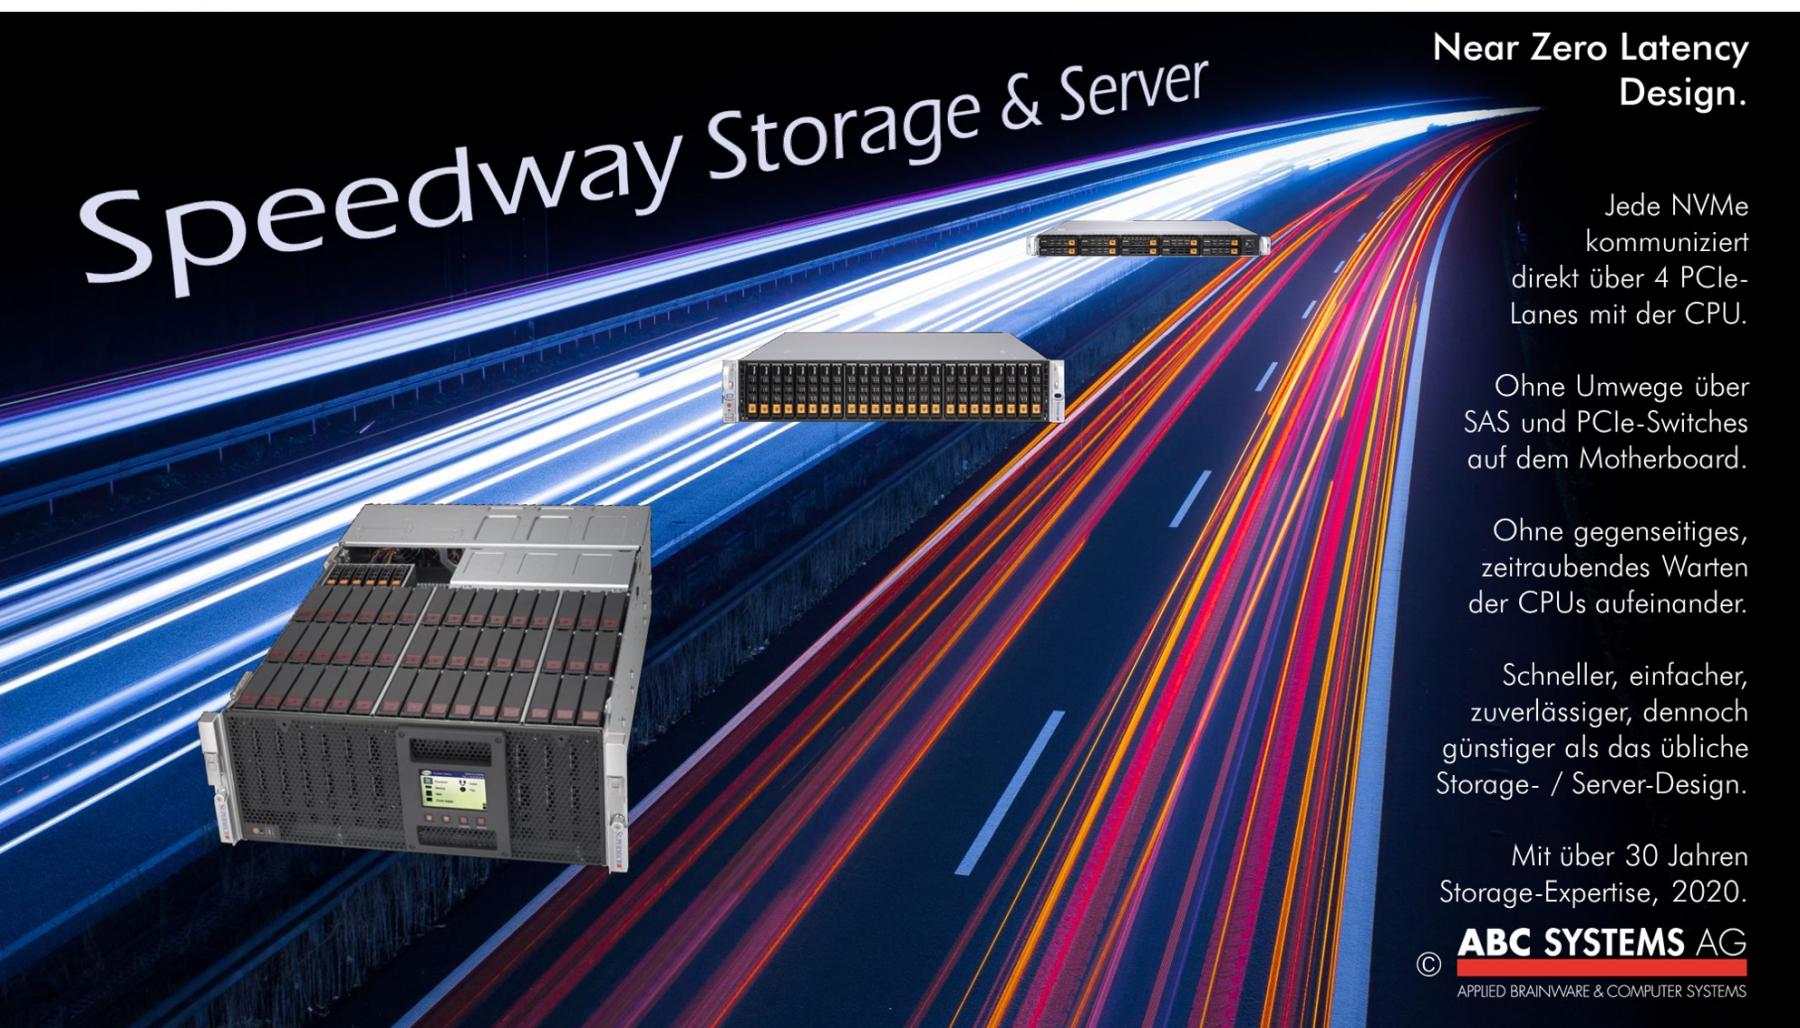 Speedway Storage & Server